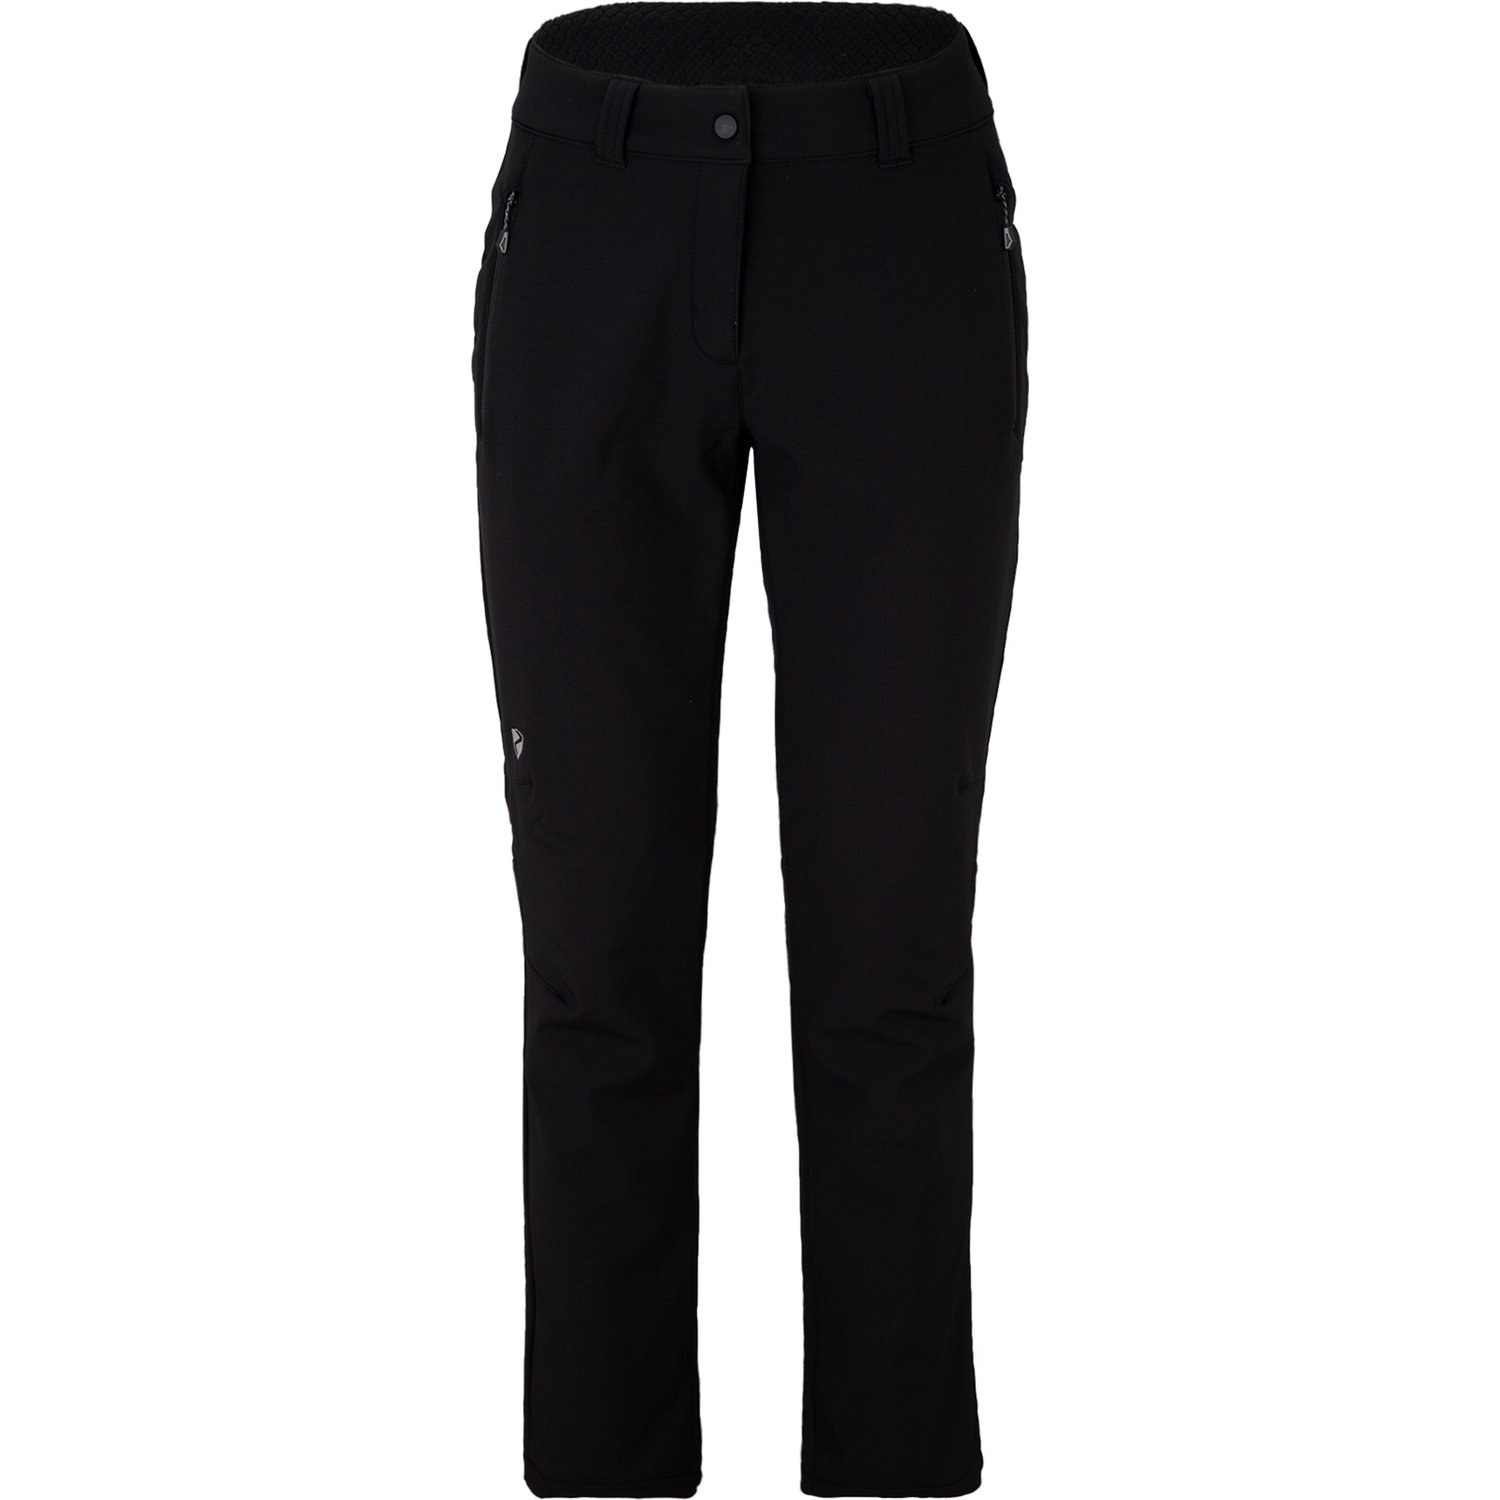 black (pants lady active), TALPA Sport 44, Klamser - - Hosen